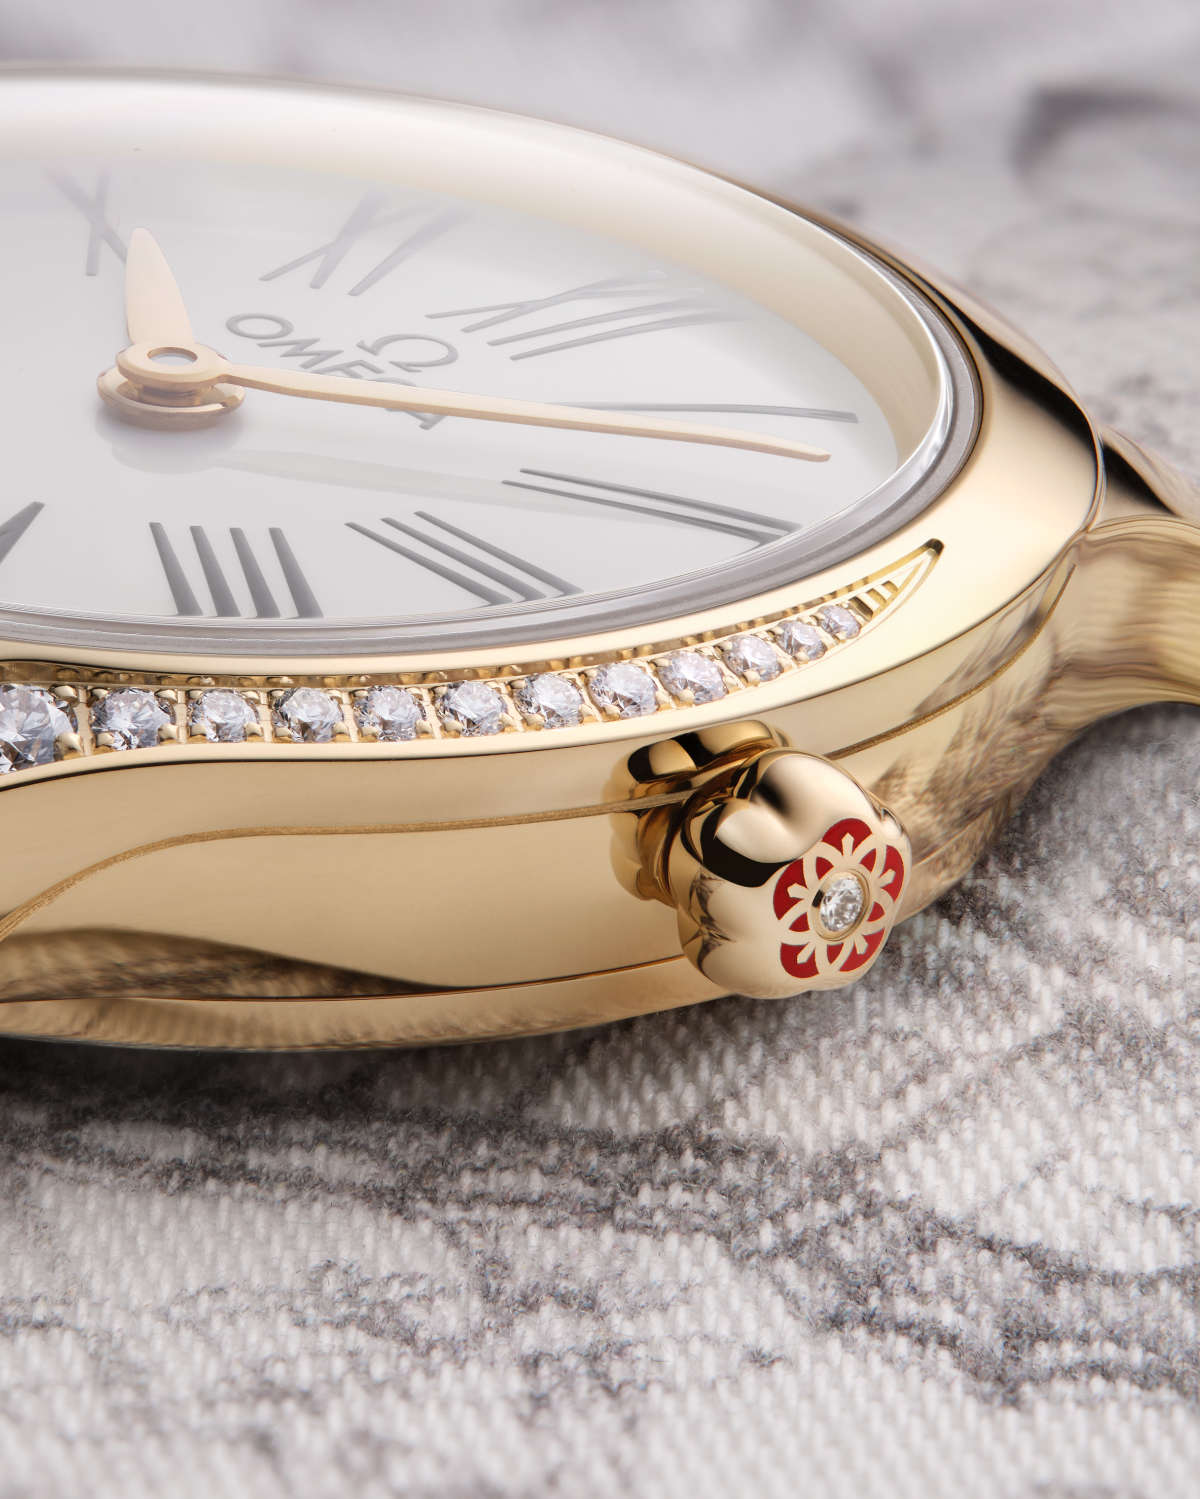 Cách chọn đồng hồ đeo tay chuẩn nhất cho nữ giới